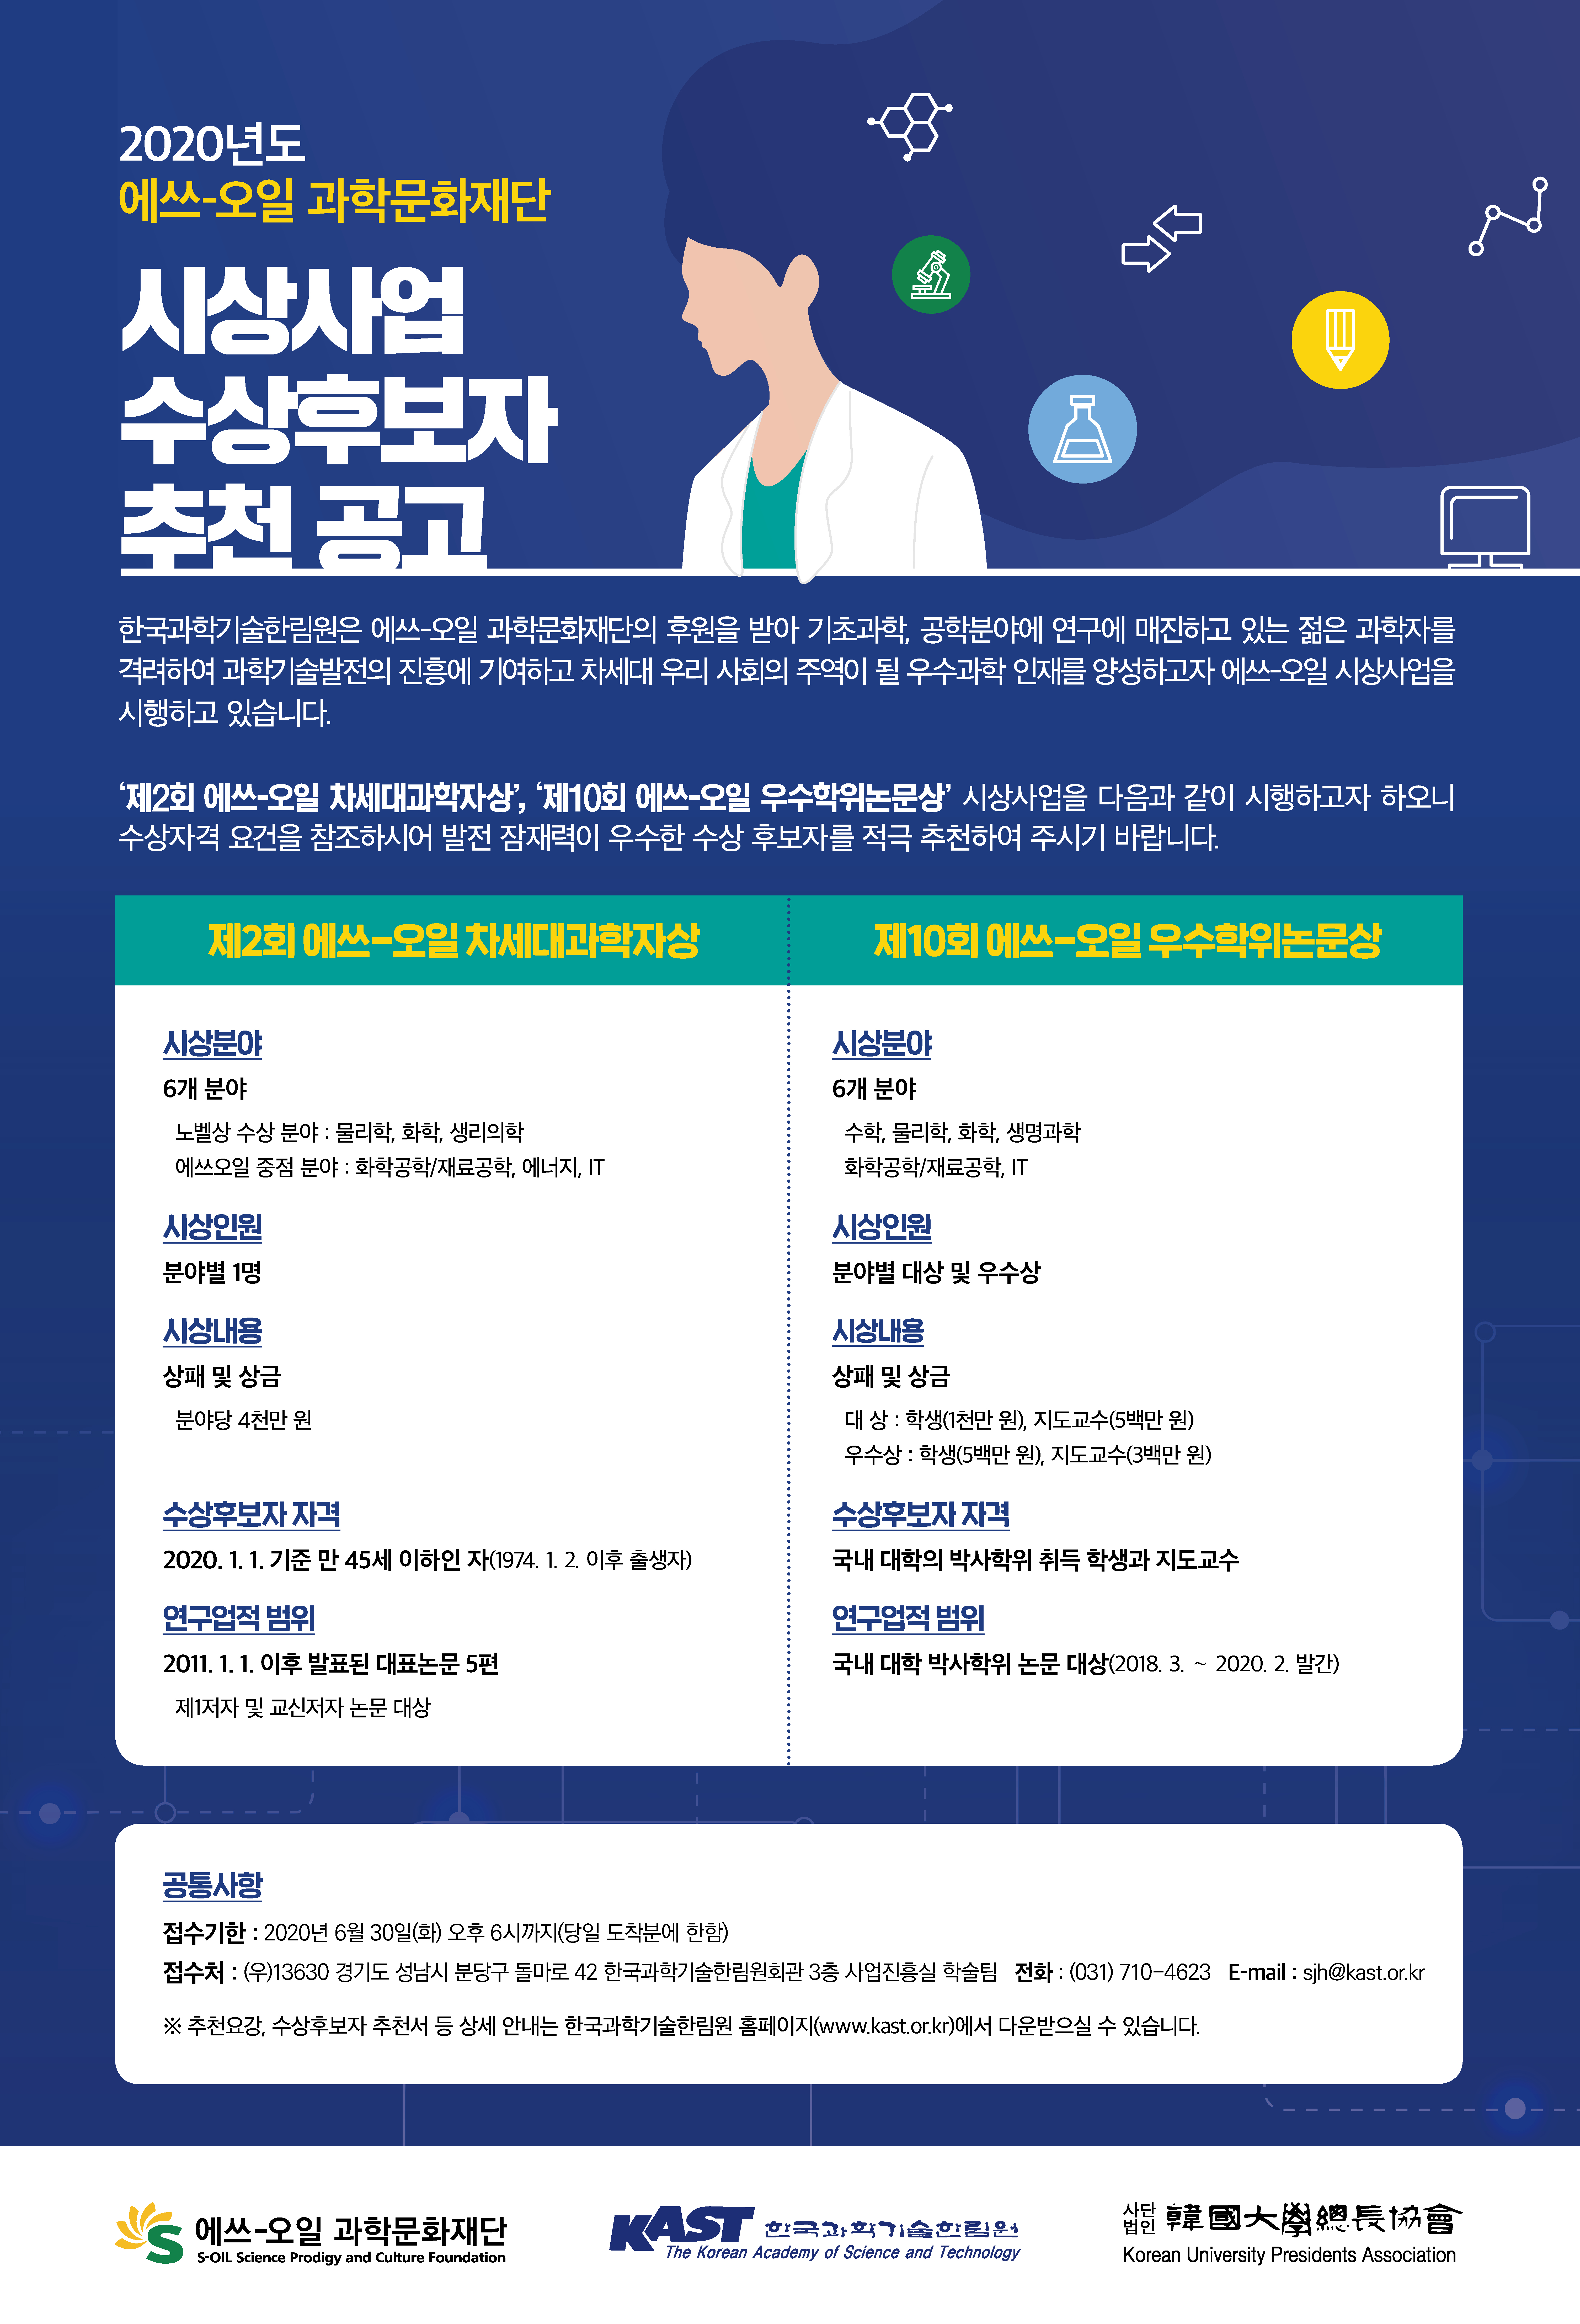 (0519-수정)한국과학기술한림원-포상사업 후보자 추천공고 포스터.jpg 이미지입니다.